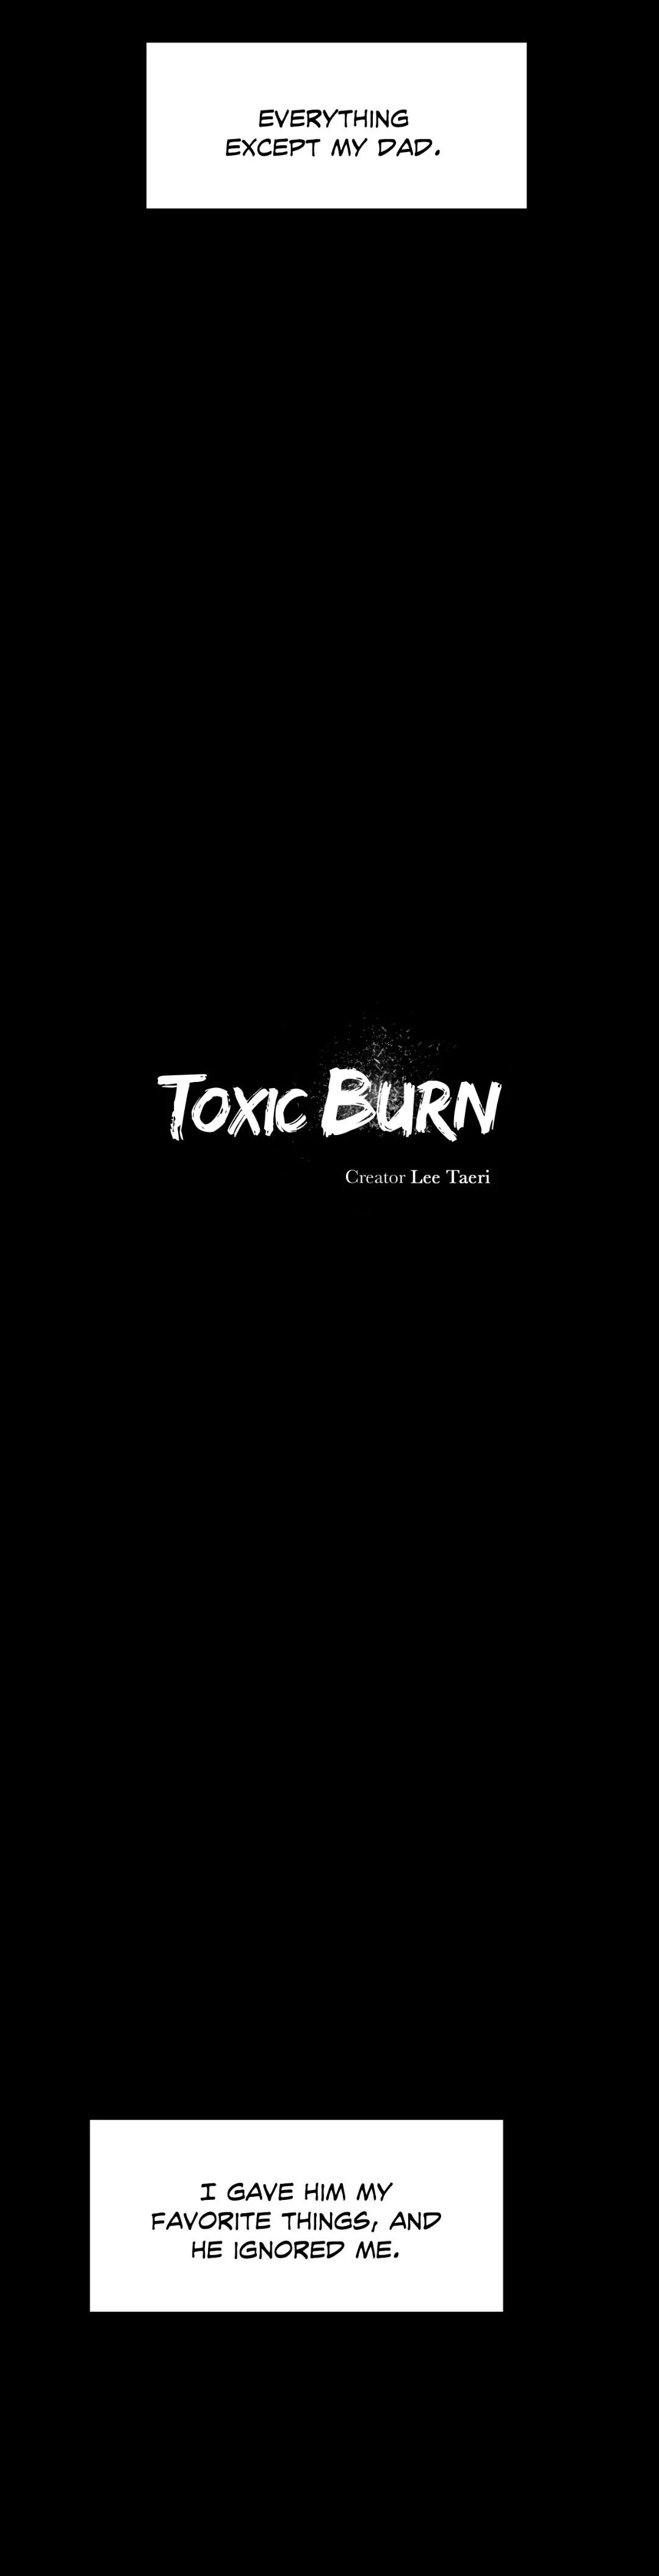 Toxic Burn image